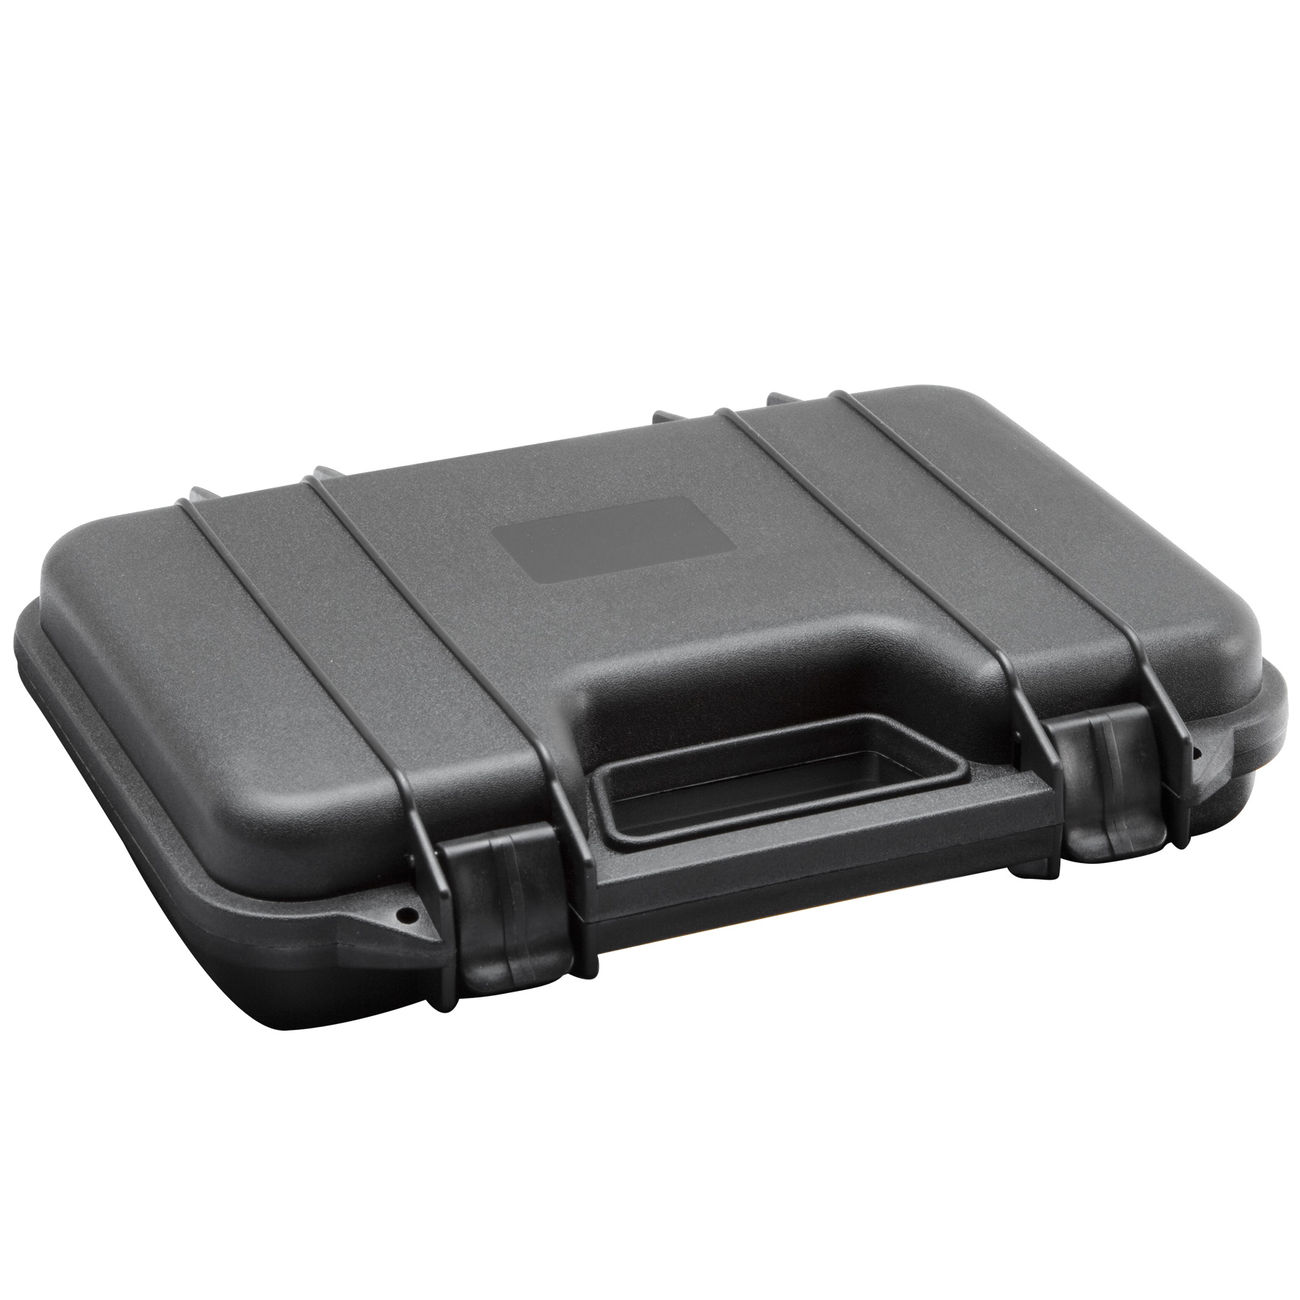 ASG Pistolenkoffer Kunststoff 31 x 19 x 7 cm schwarz kaufen